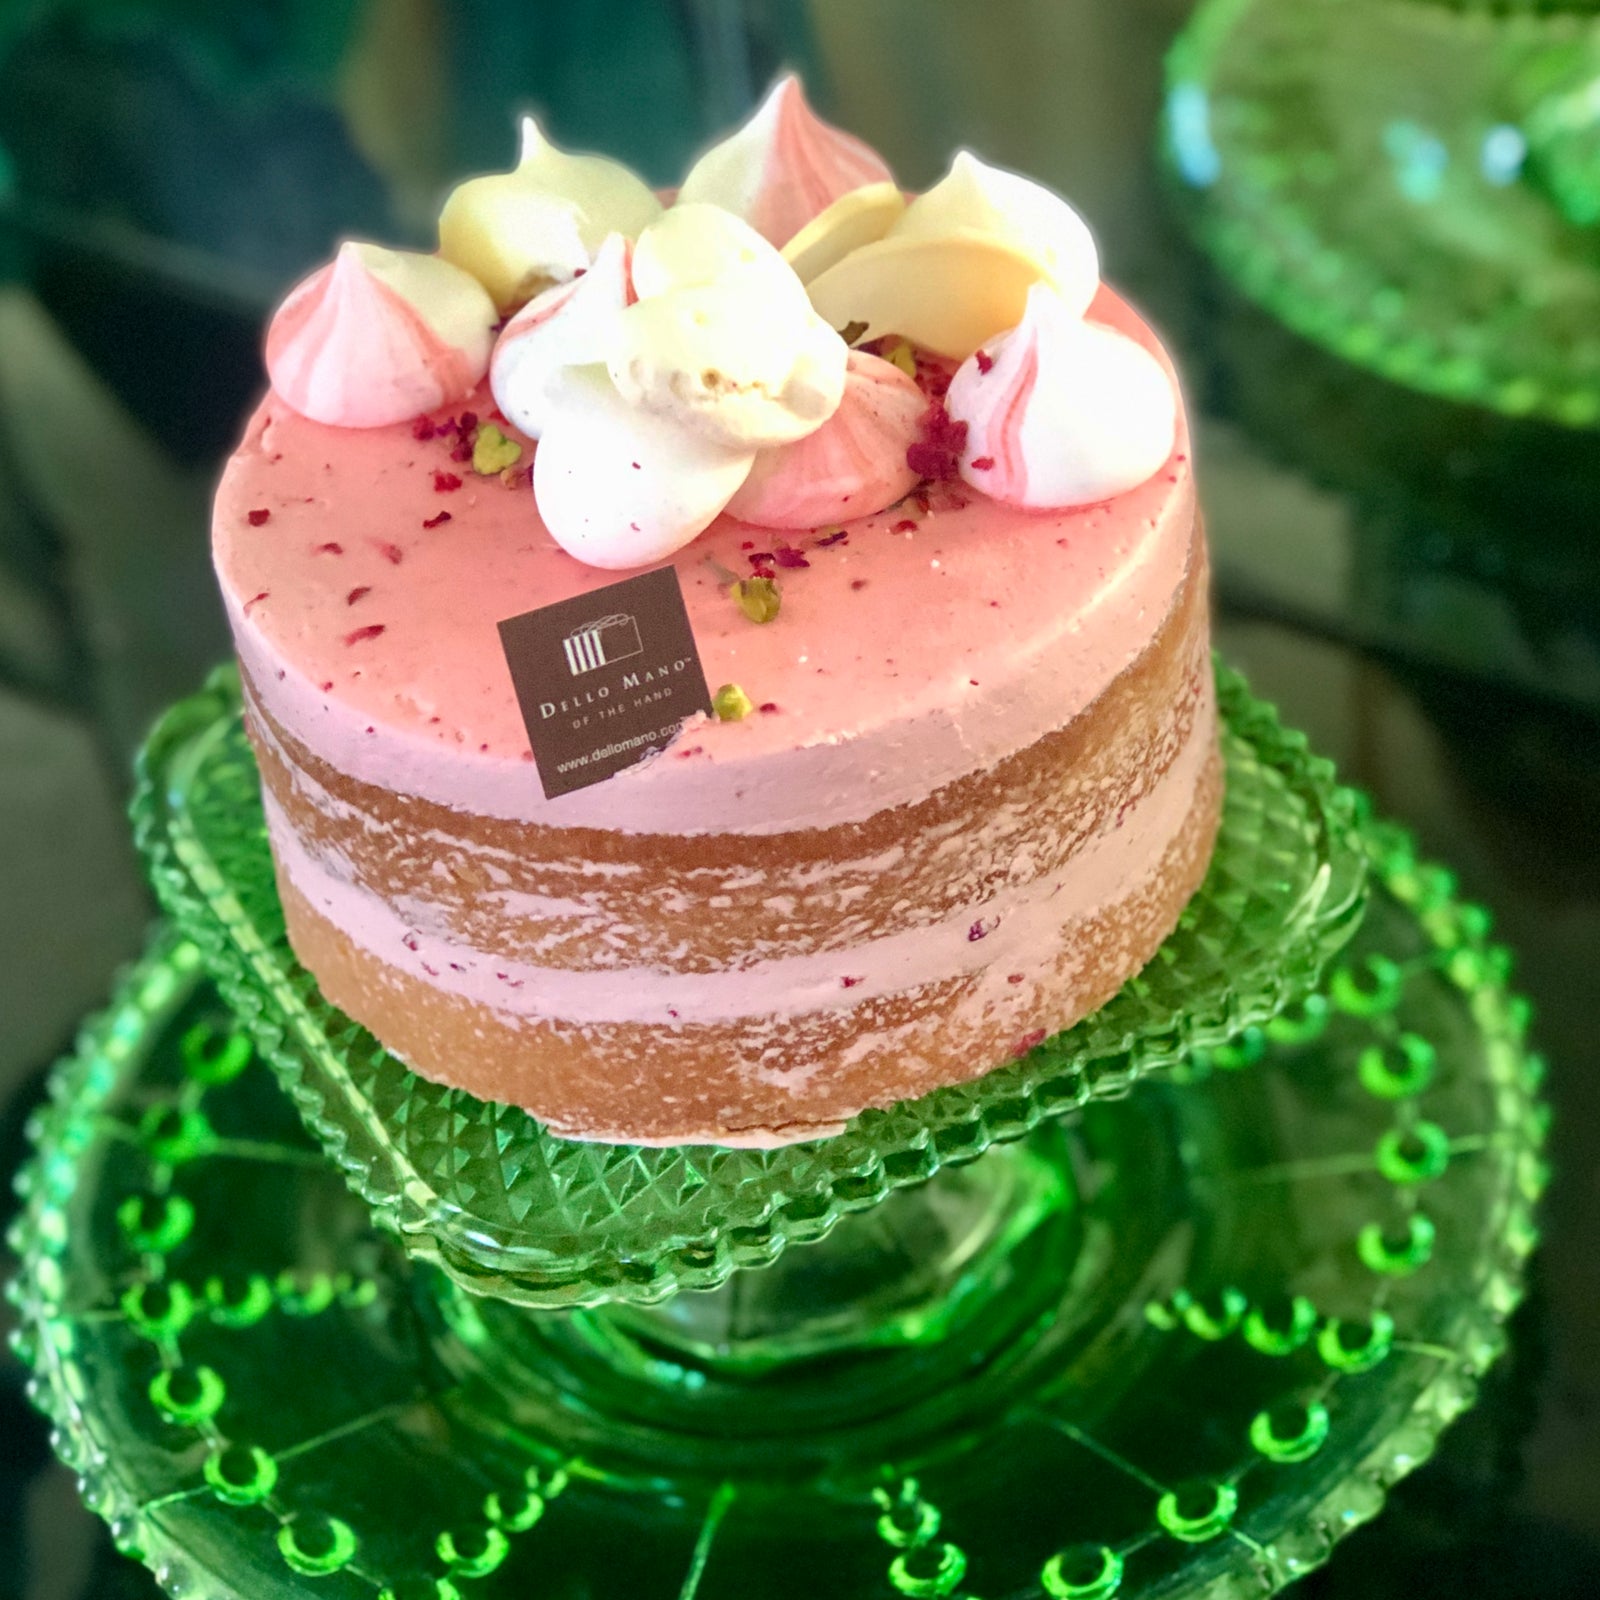 Abigail – Cute Cakes & Co